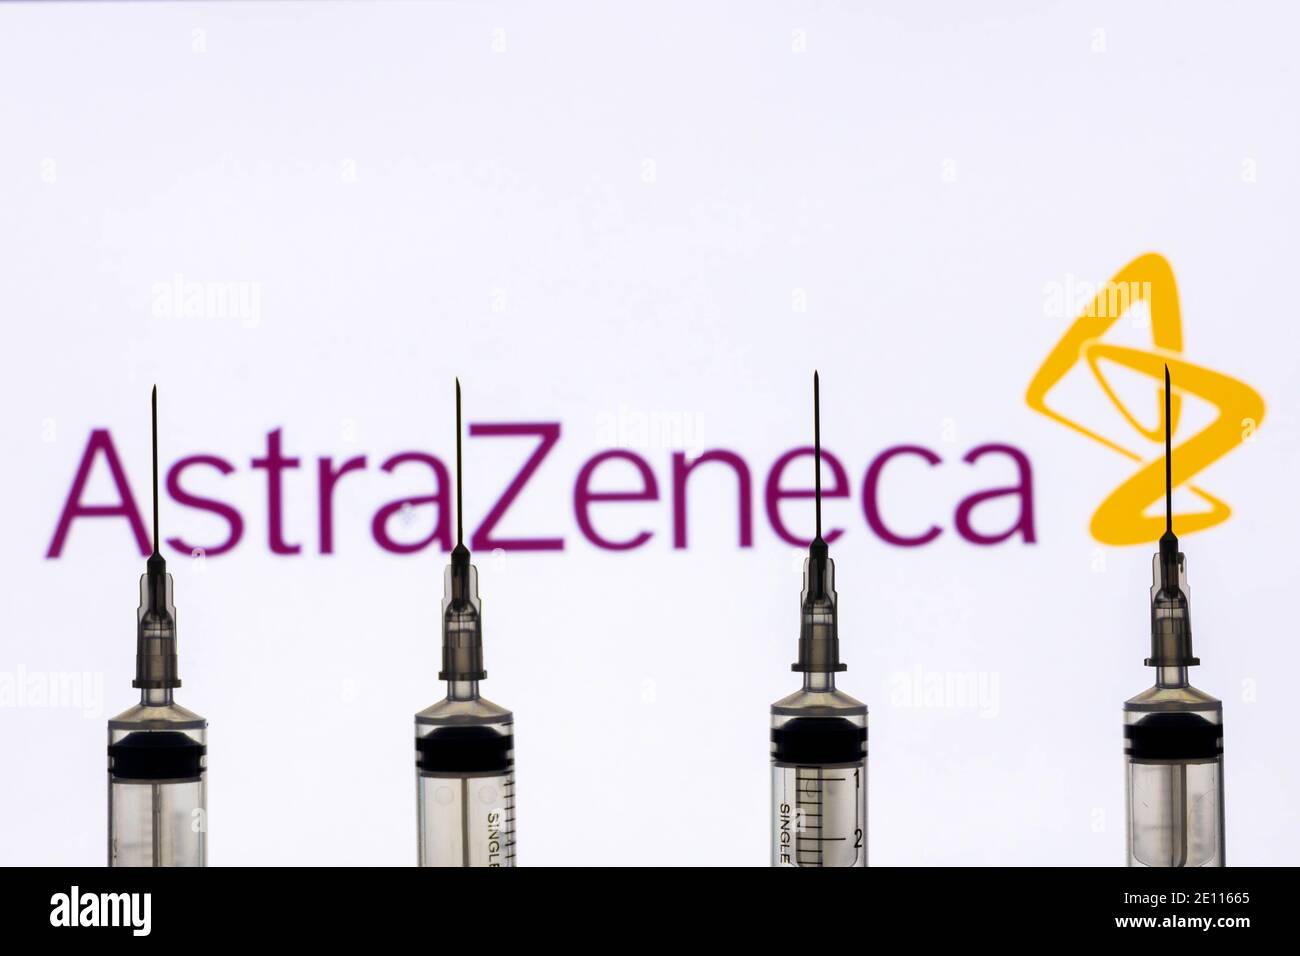 Kathmandu, Nepal - January 03 2021: Closeup of a syringe against Astrazeneca logo Stock Photo